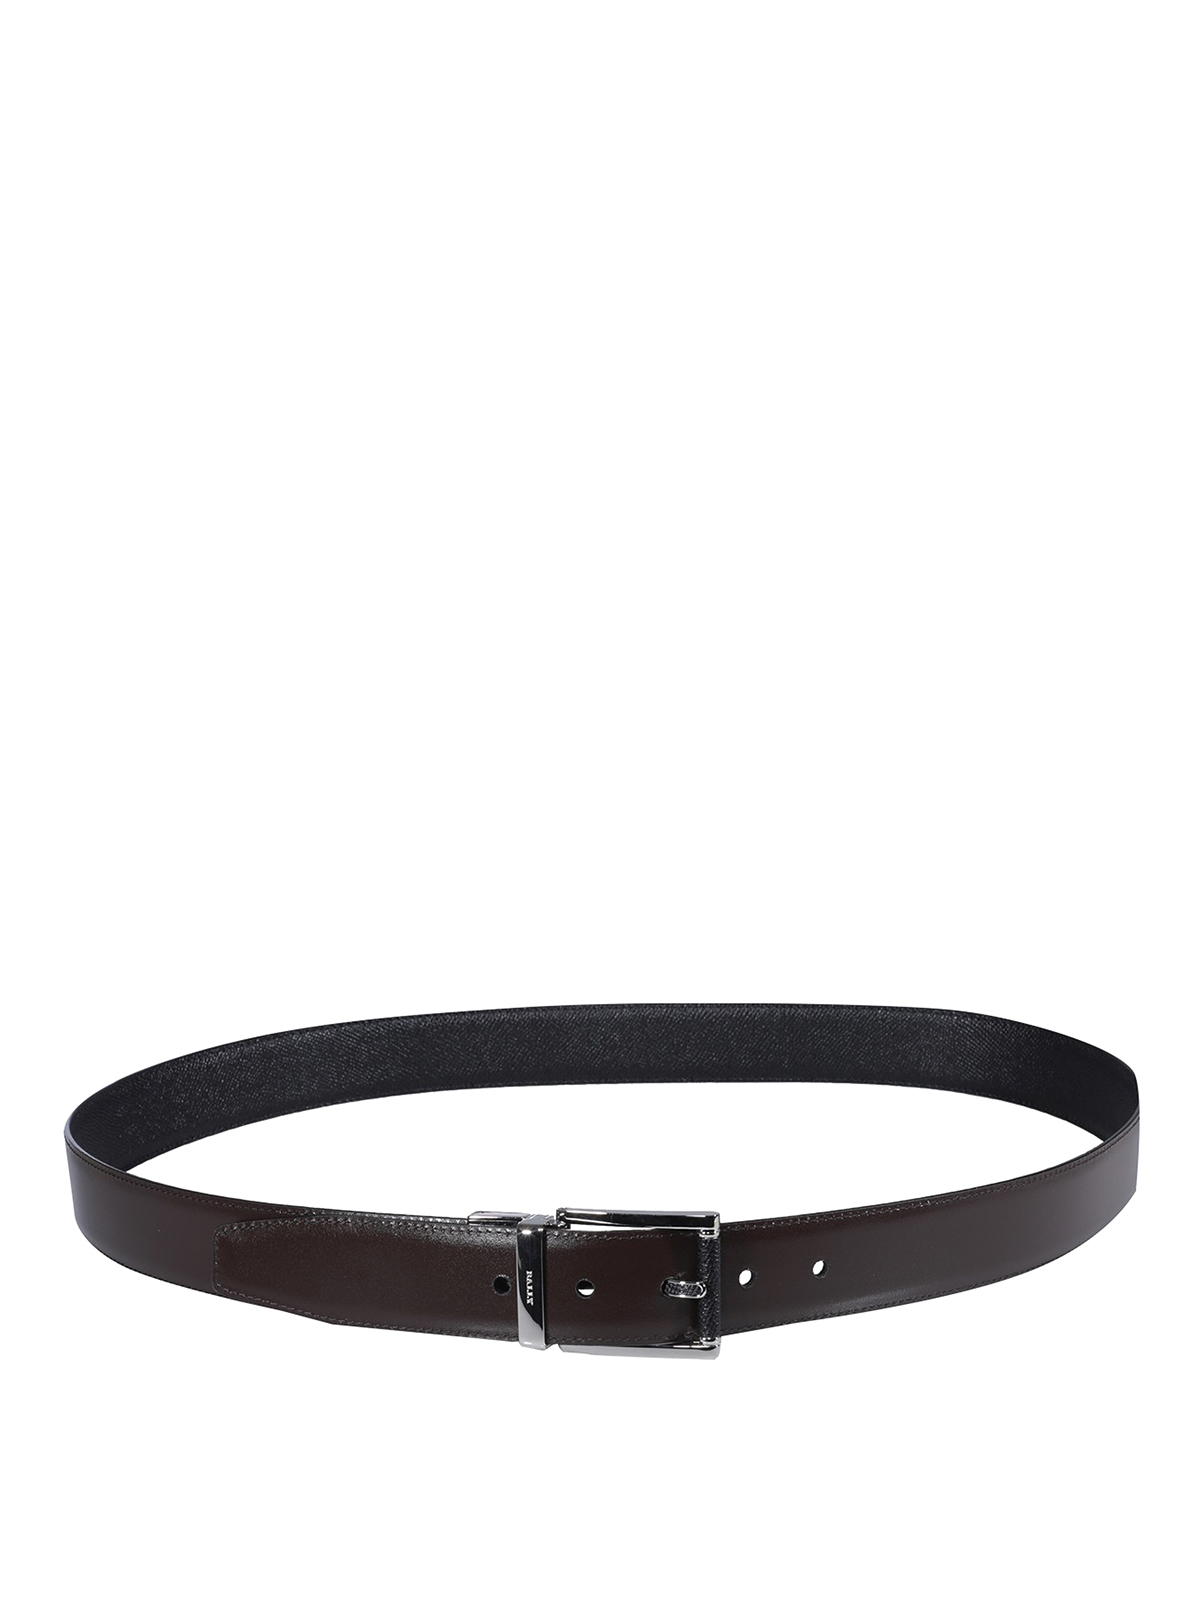 Belts Bally - Astor belt - ASTOR35MLBF640 | Shop online at iKRIX